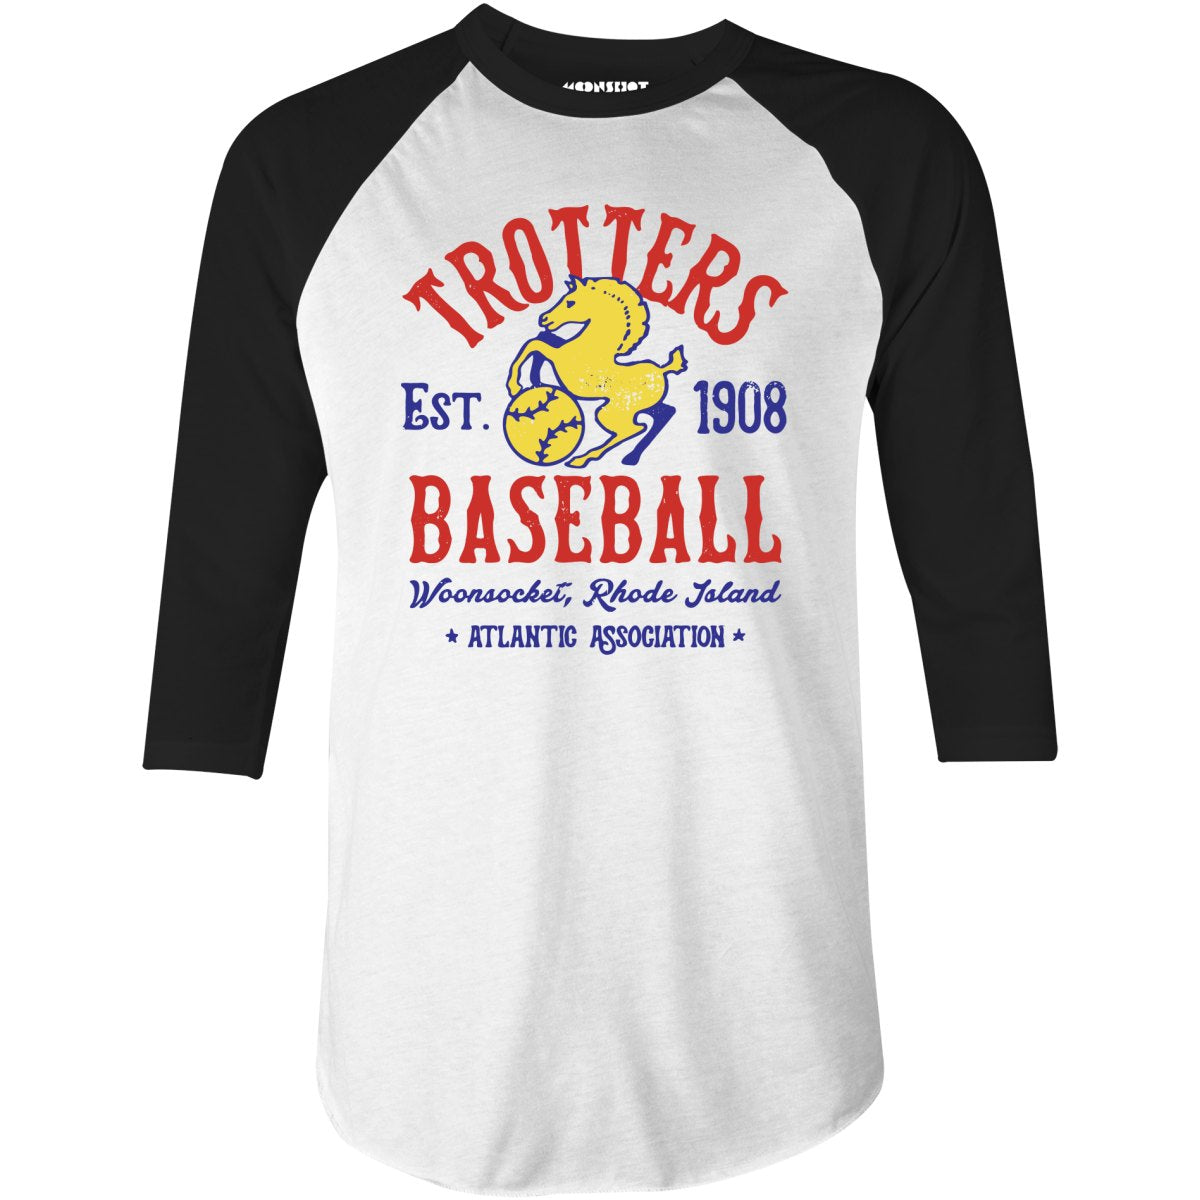 Woonsocket Trotters - Rhode Island - Vintage Defunct Baseball Teams - 3/4 Sleeve Raglan T-Shirt